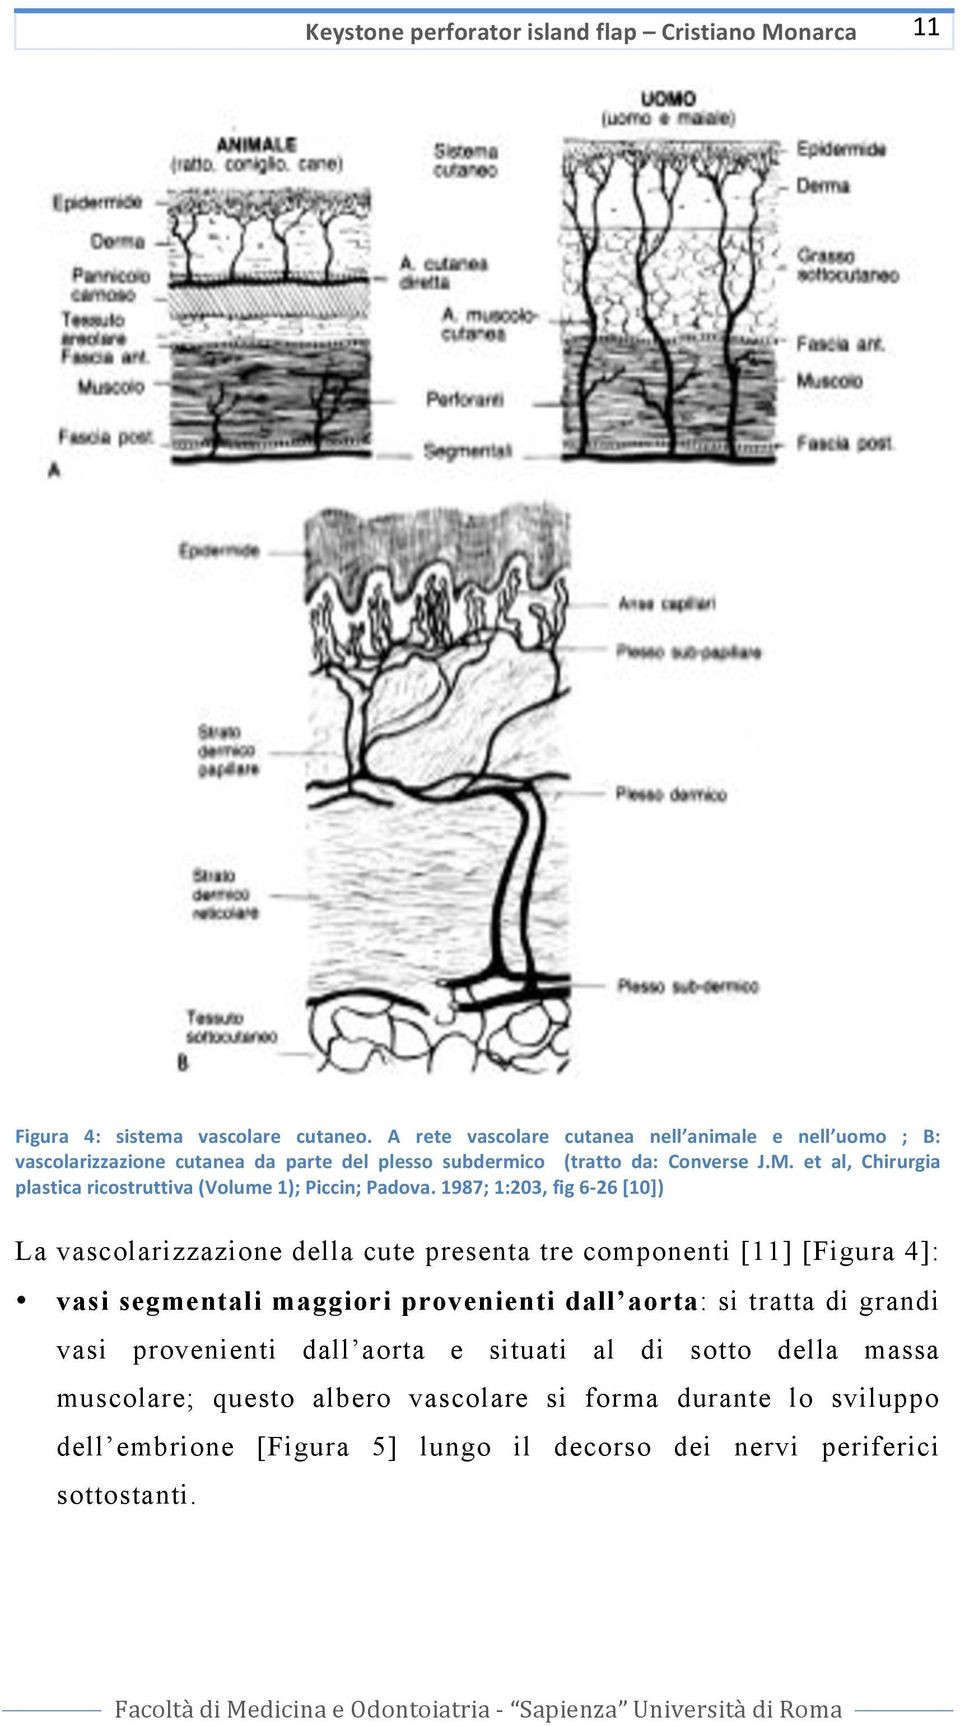 et al, Chirurgia plasticaricostruttiva(volume1);piccin;padova.